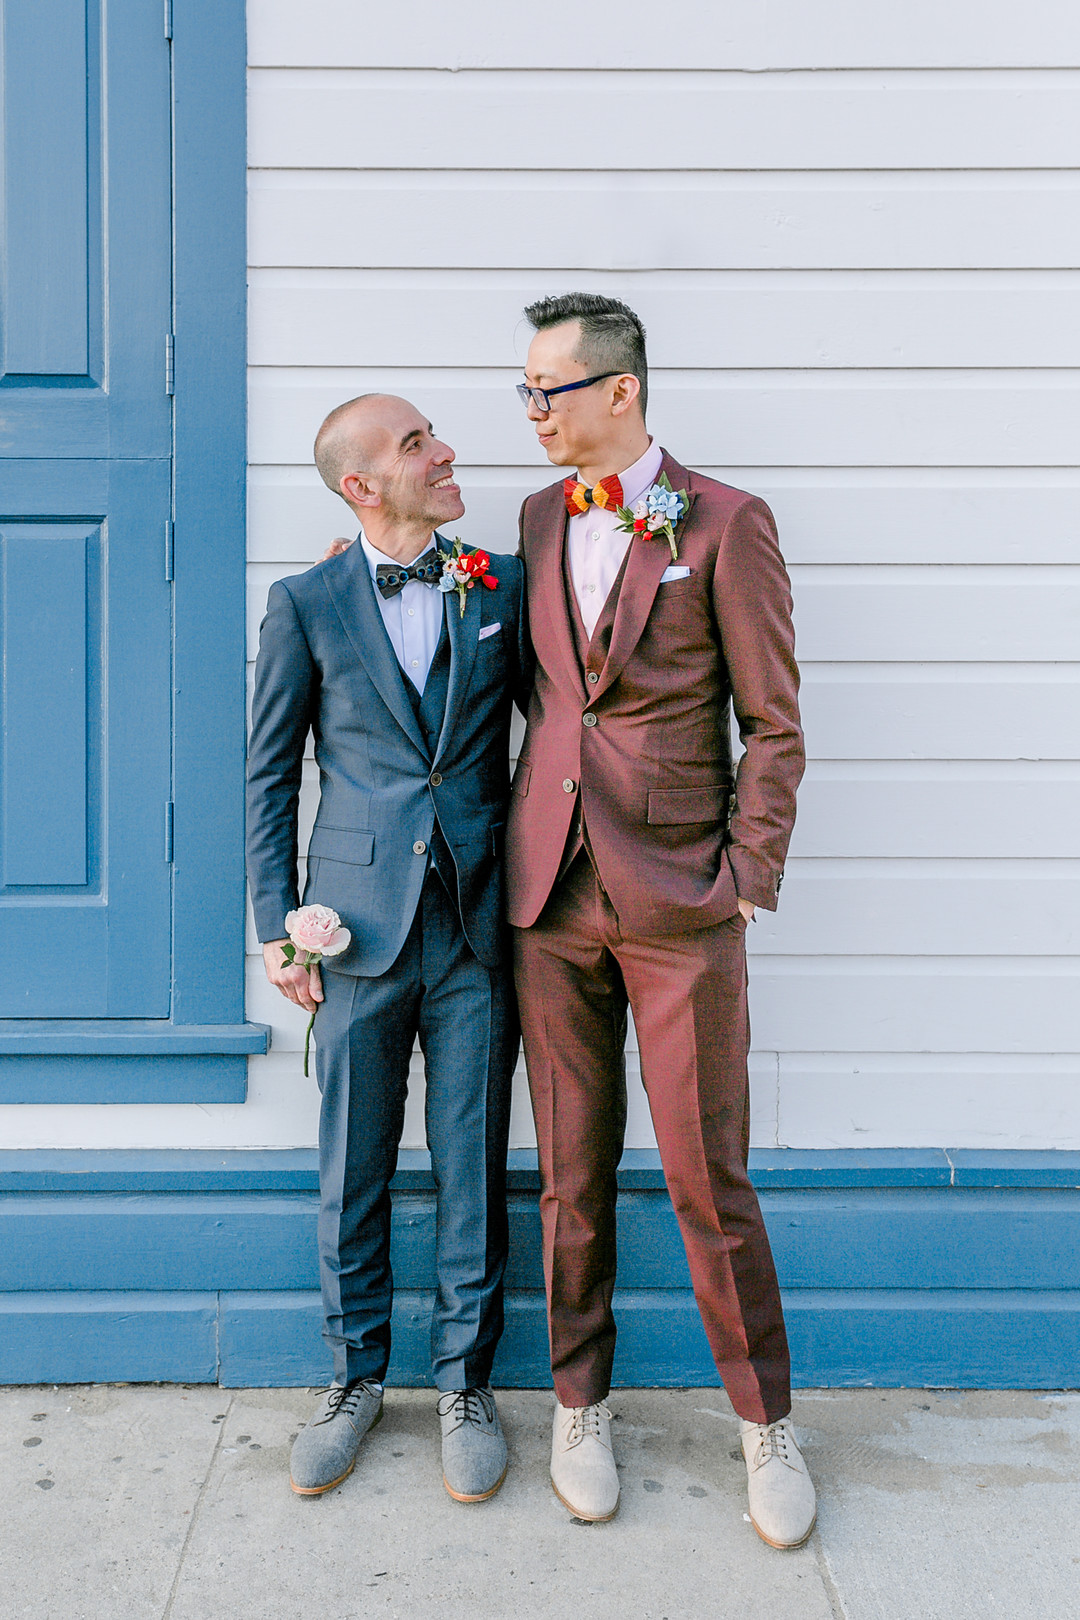 Burgundy and blue spring wedding in San Francisco, California LGBTQ+ weddings two grooms gay wedding Argonaut Hotel bow ties burgundy tux blue tux